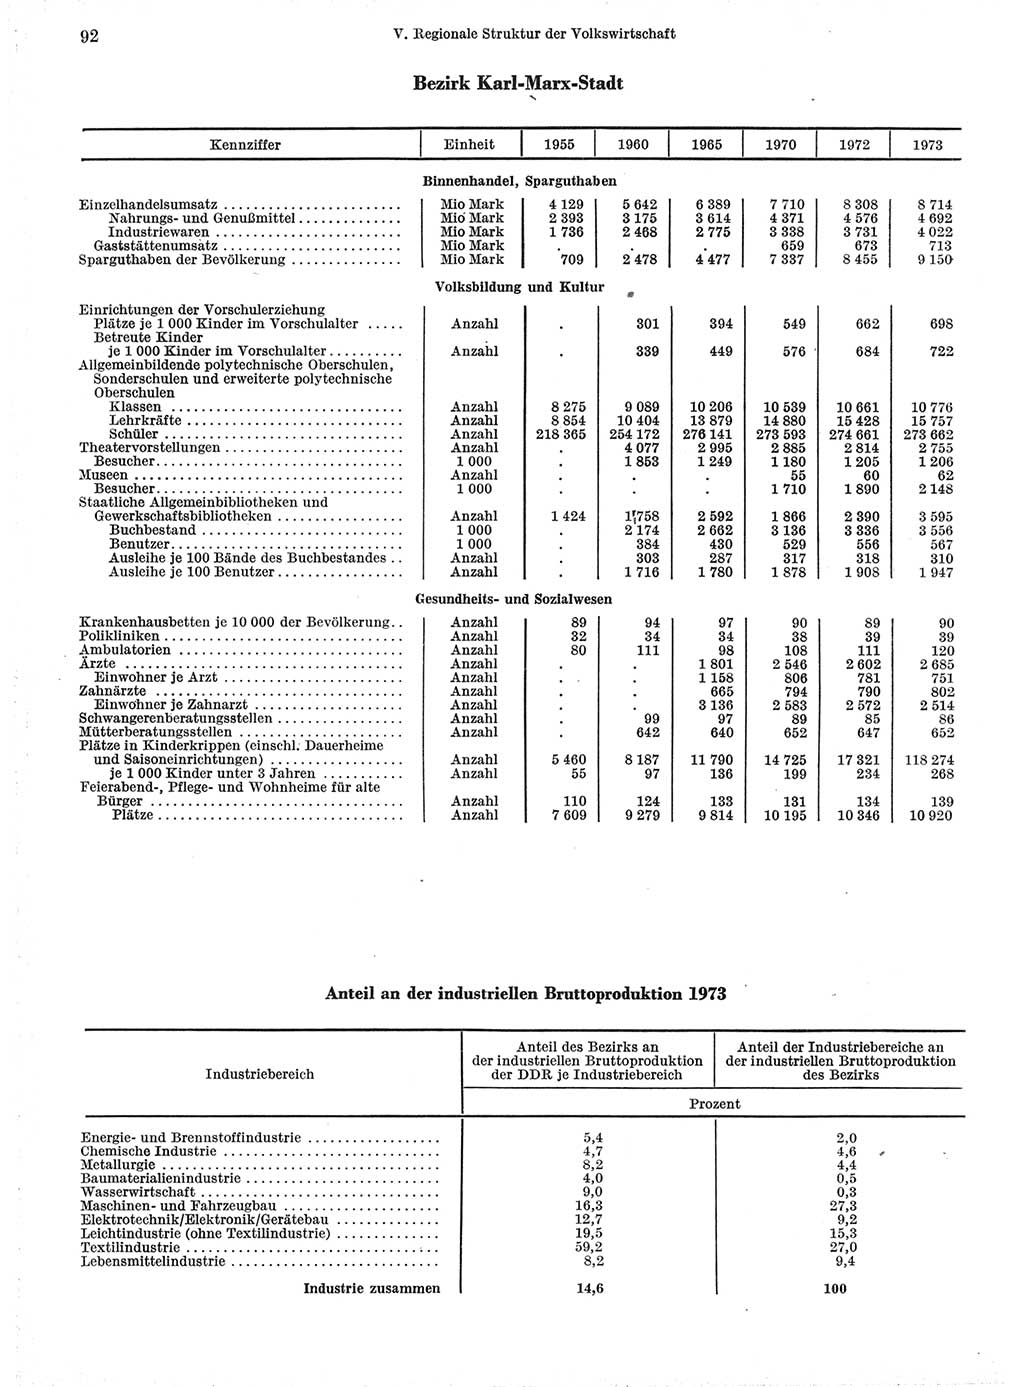 Statistisches Jahrbuch der Deutschen Demokratischen Republik (DDR) 1974, Seite 92 (Stat. Jb. DDR 1974, S. 92)